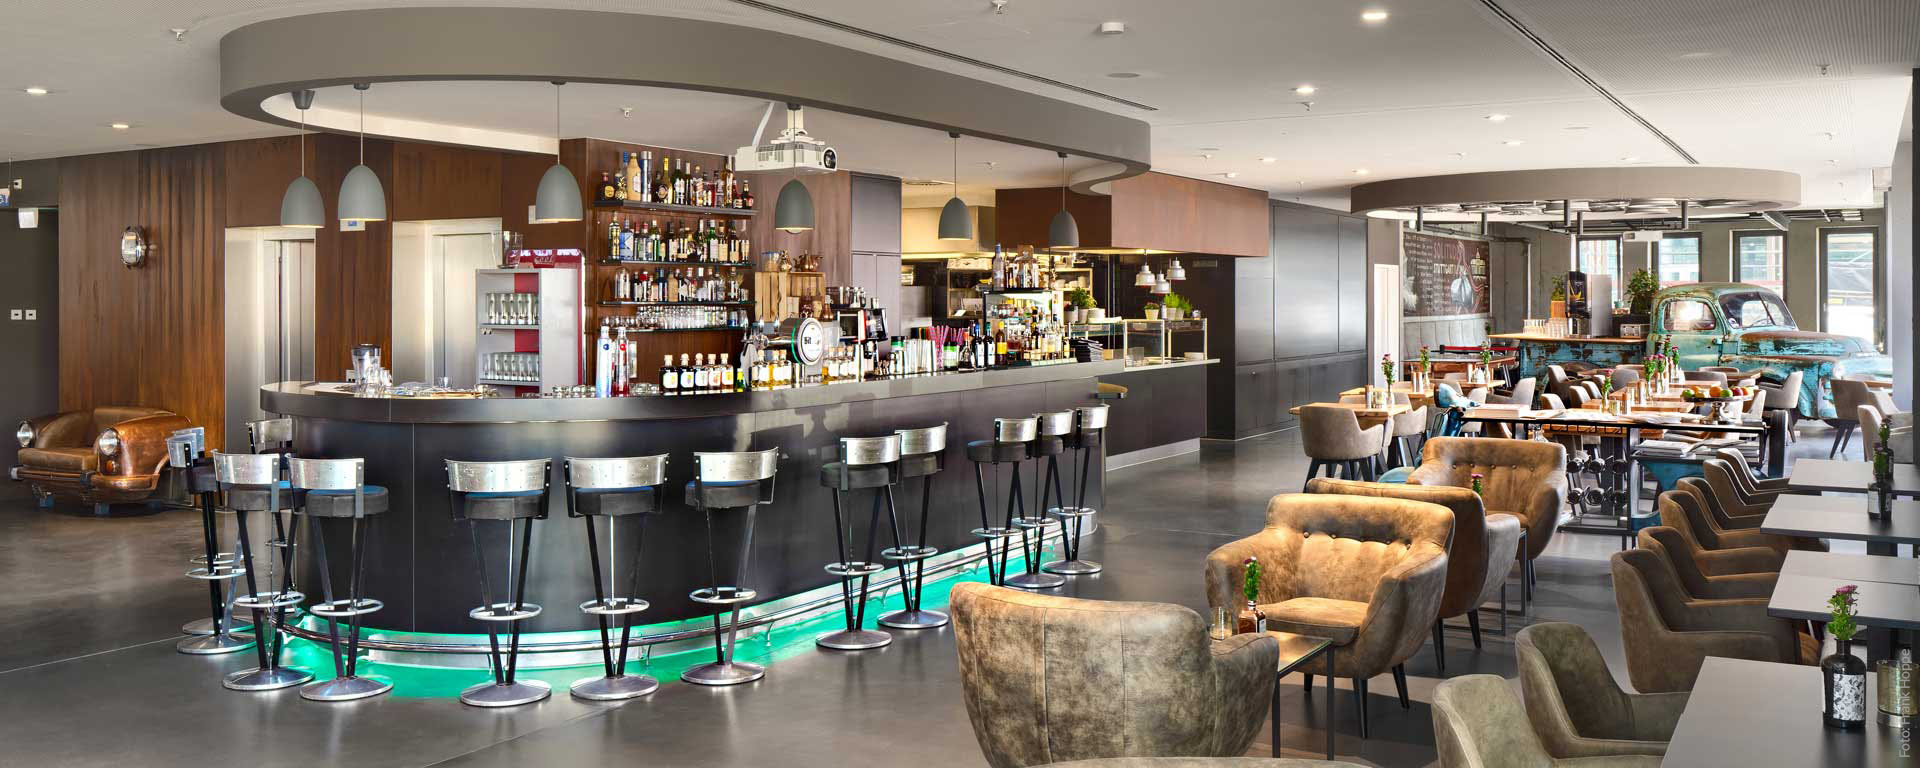 V8 HOTEL PICK-UP Bar: Café mit Terrasse, Drinks & Cocktails mit Supercar-Ambiente - auf dem Flugfeld in Böblingen, Region Stuttgart